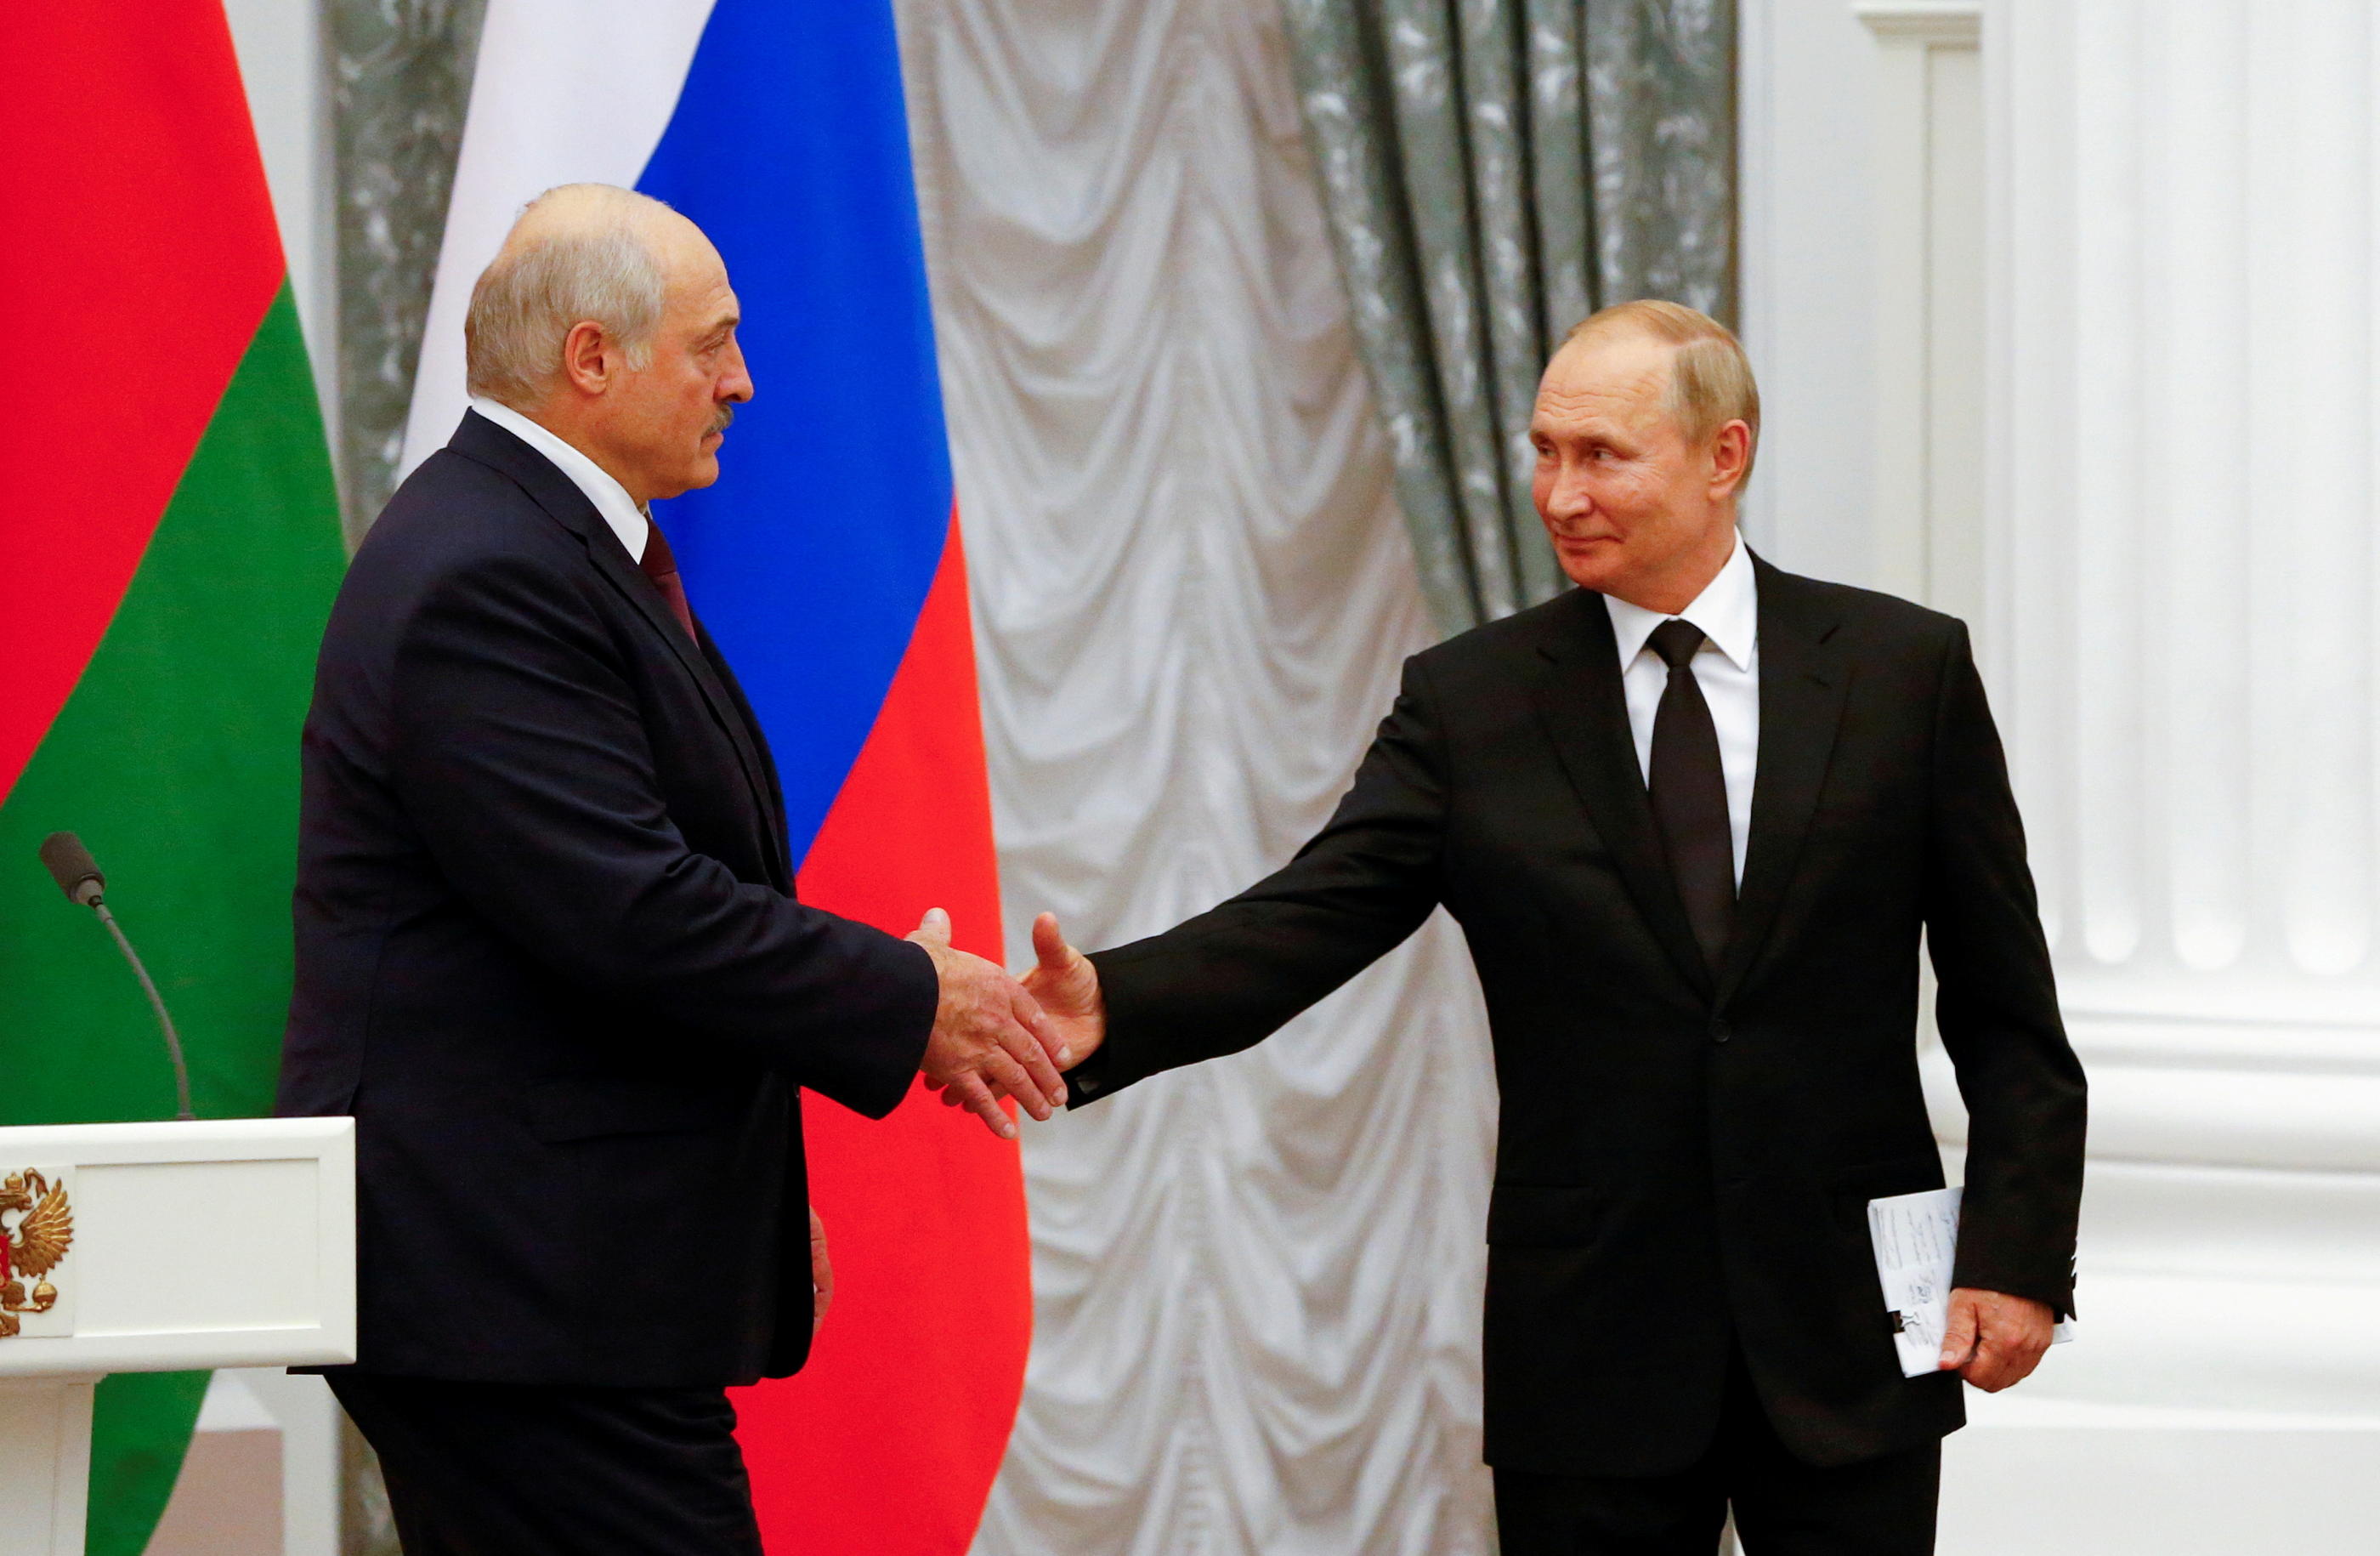 Le président russe, Vladimir Poutine (à dr.), et son homologue biélorusse, Alexandre Loukachenko (à g.), à Moscou, le 9 septembre 2022. Reuters/Shamil Zhumatov